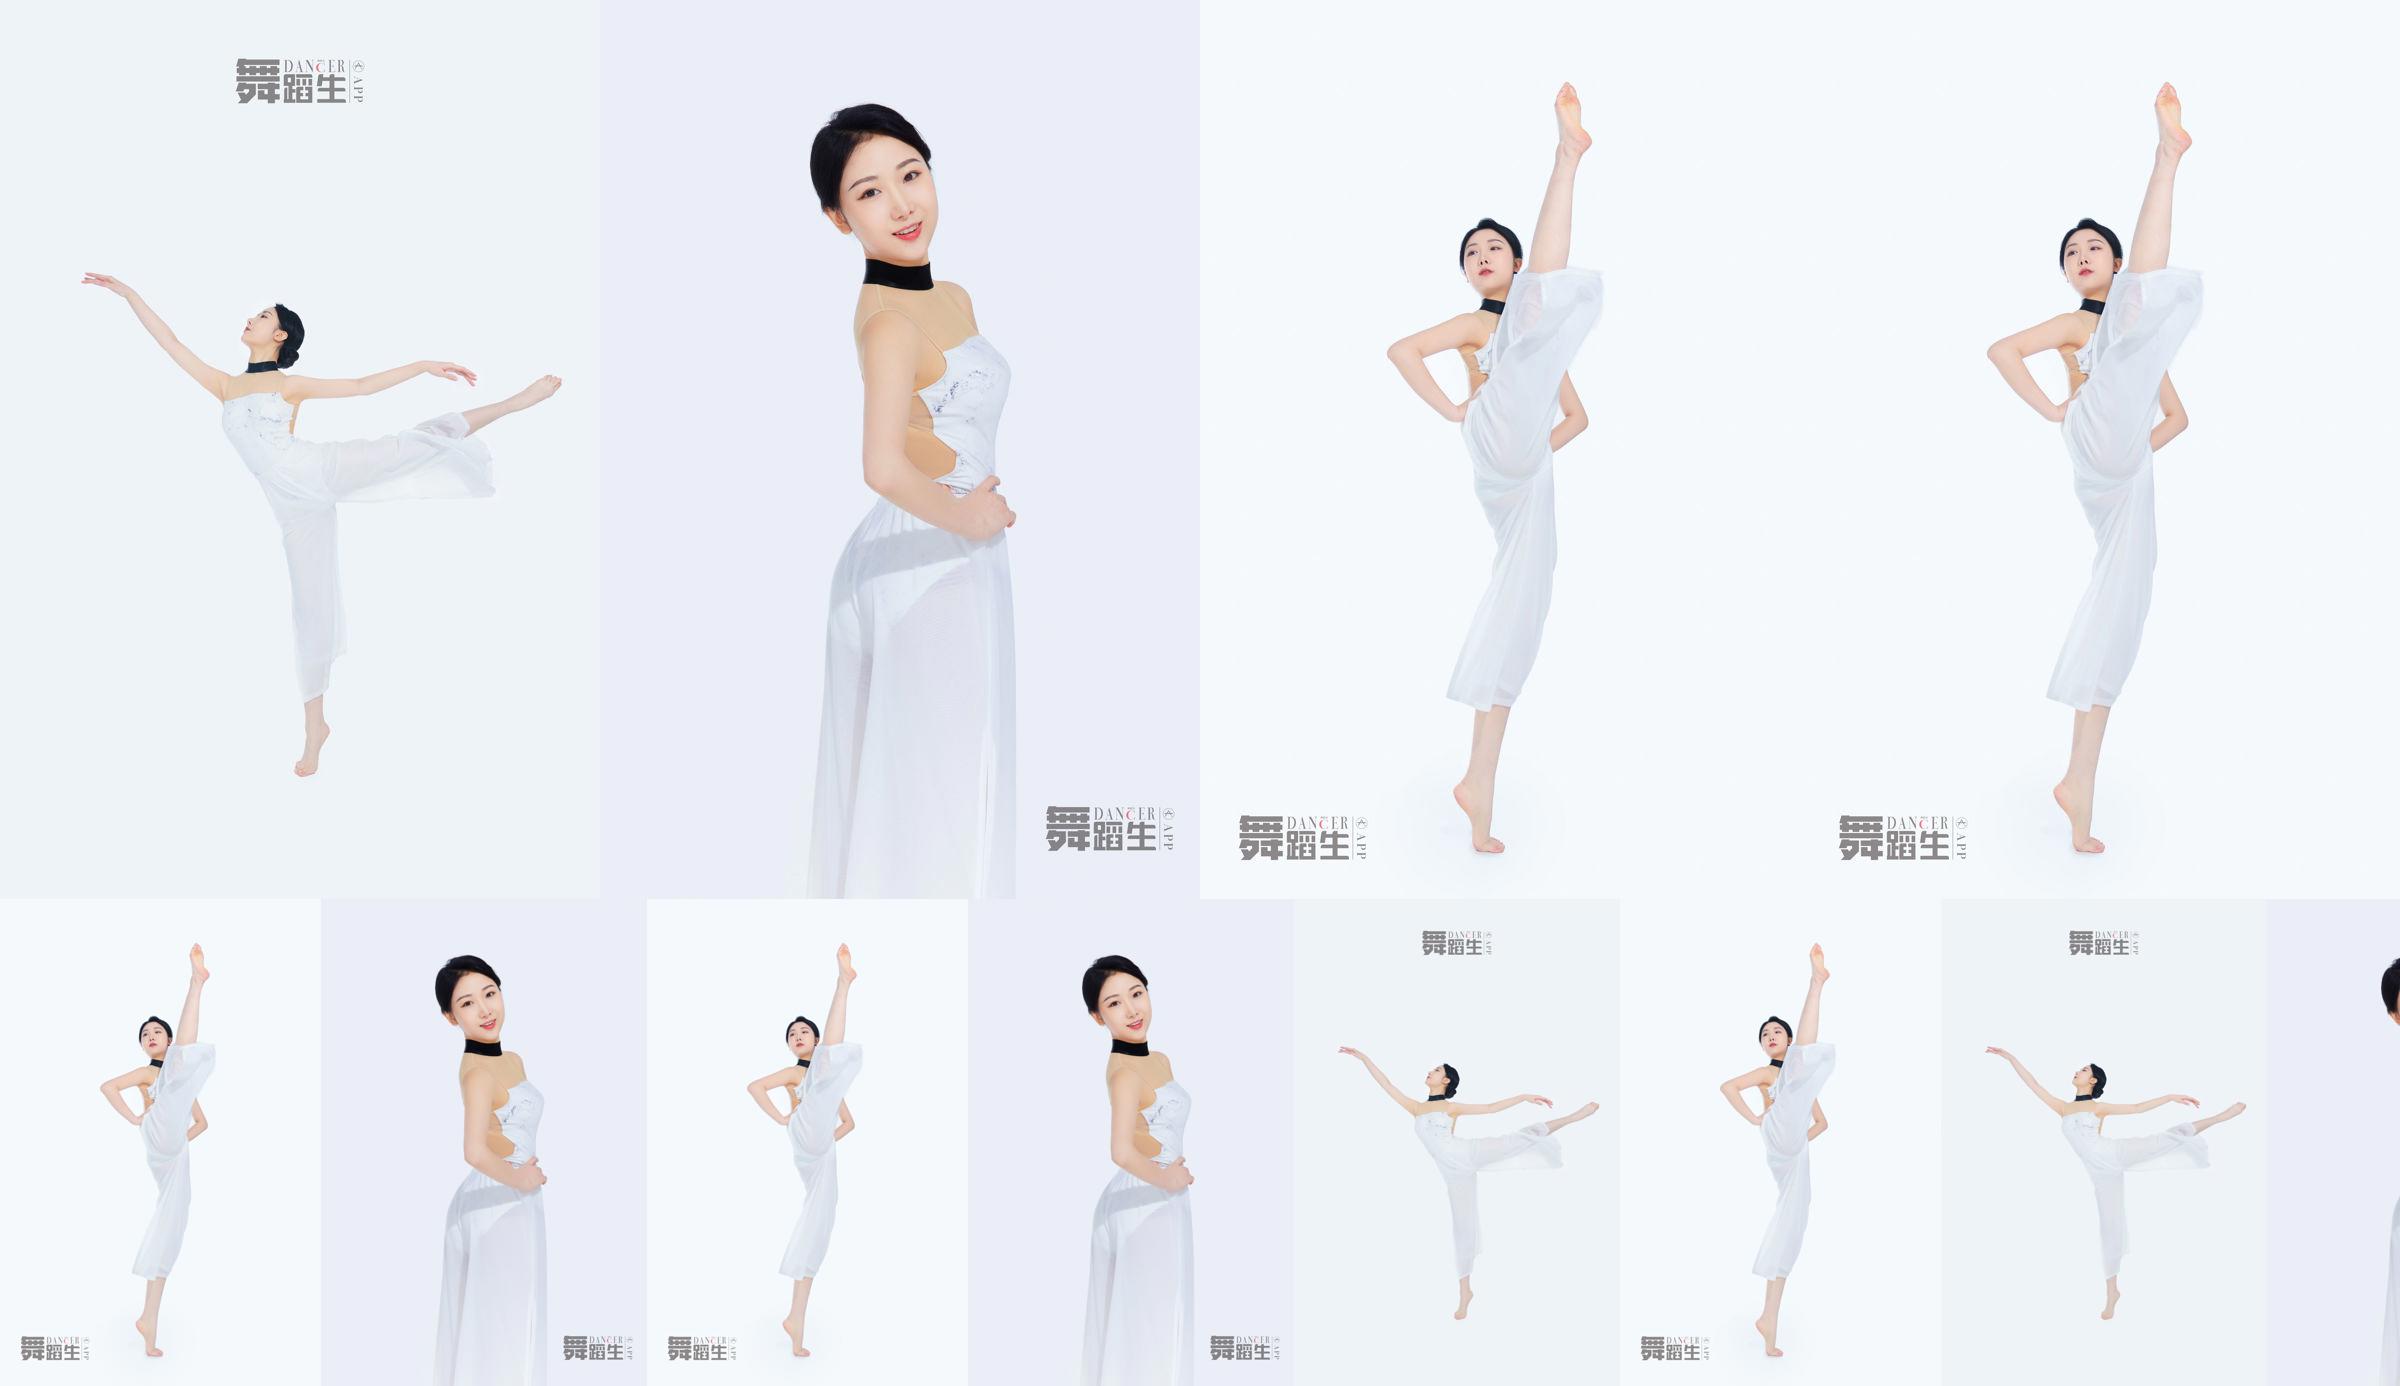 [Carrie Galli] Diario de un estudiante de danza 081 Xue Hui No.39da8a Página 1